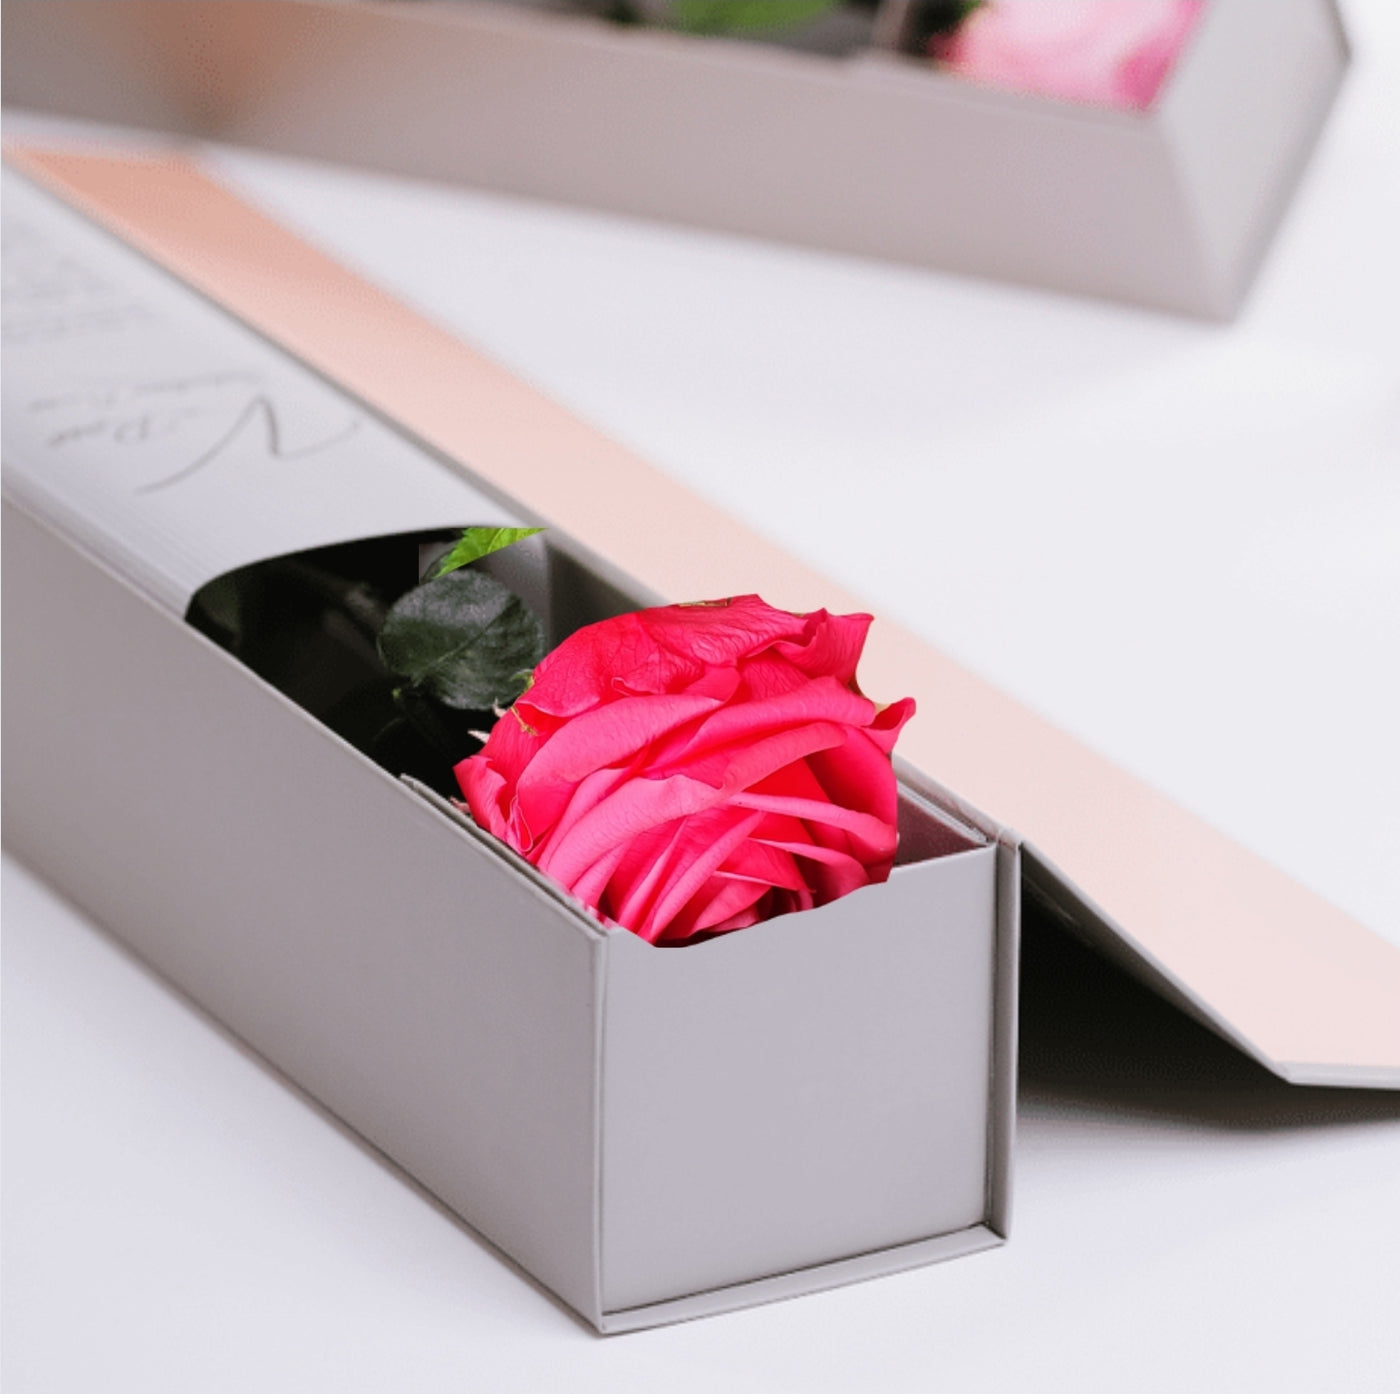 Rose eternelle ou stabilisée rose foncé sur tige dans sa boite Ateliers Ouchamp